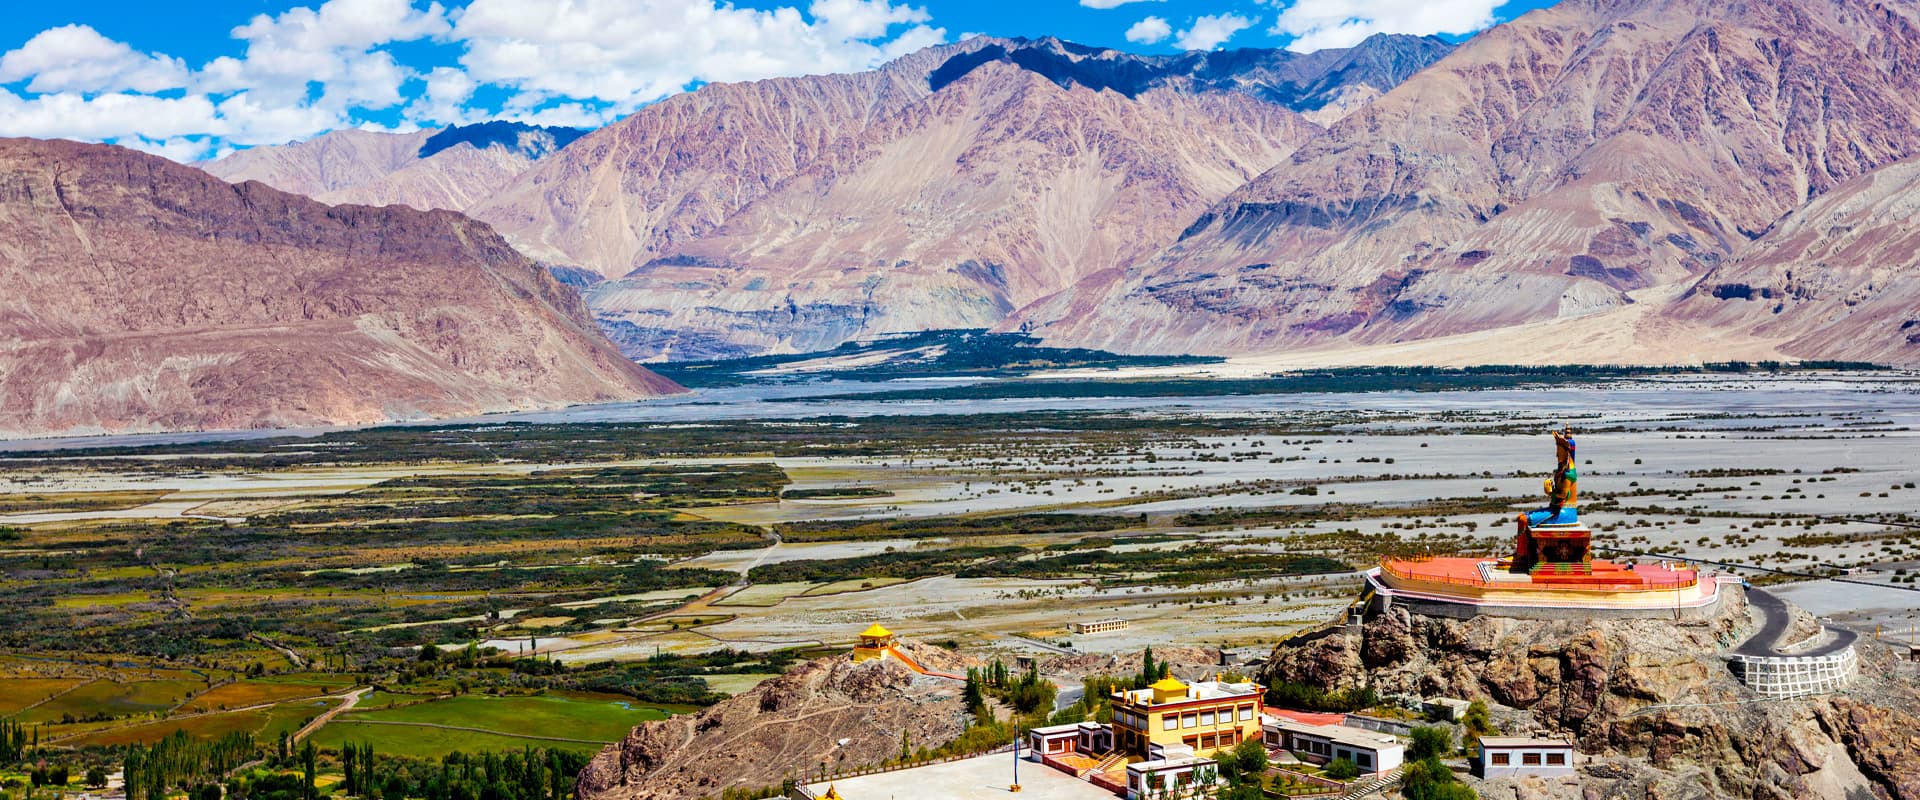 Nubra Valley, Ladakh, India, This was taken in Nubra Valley…